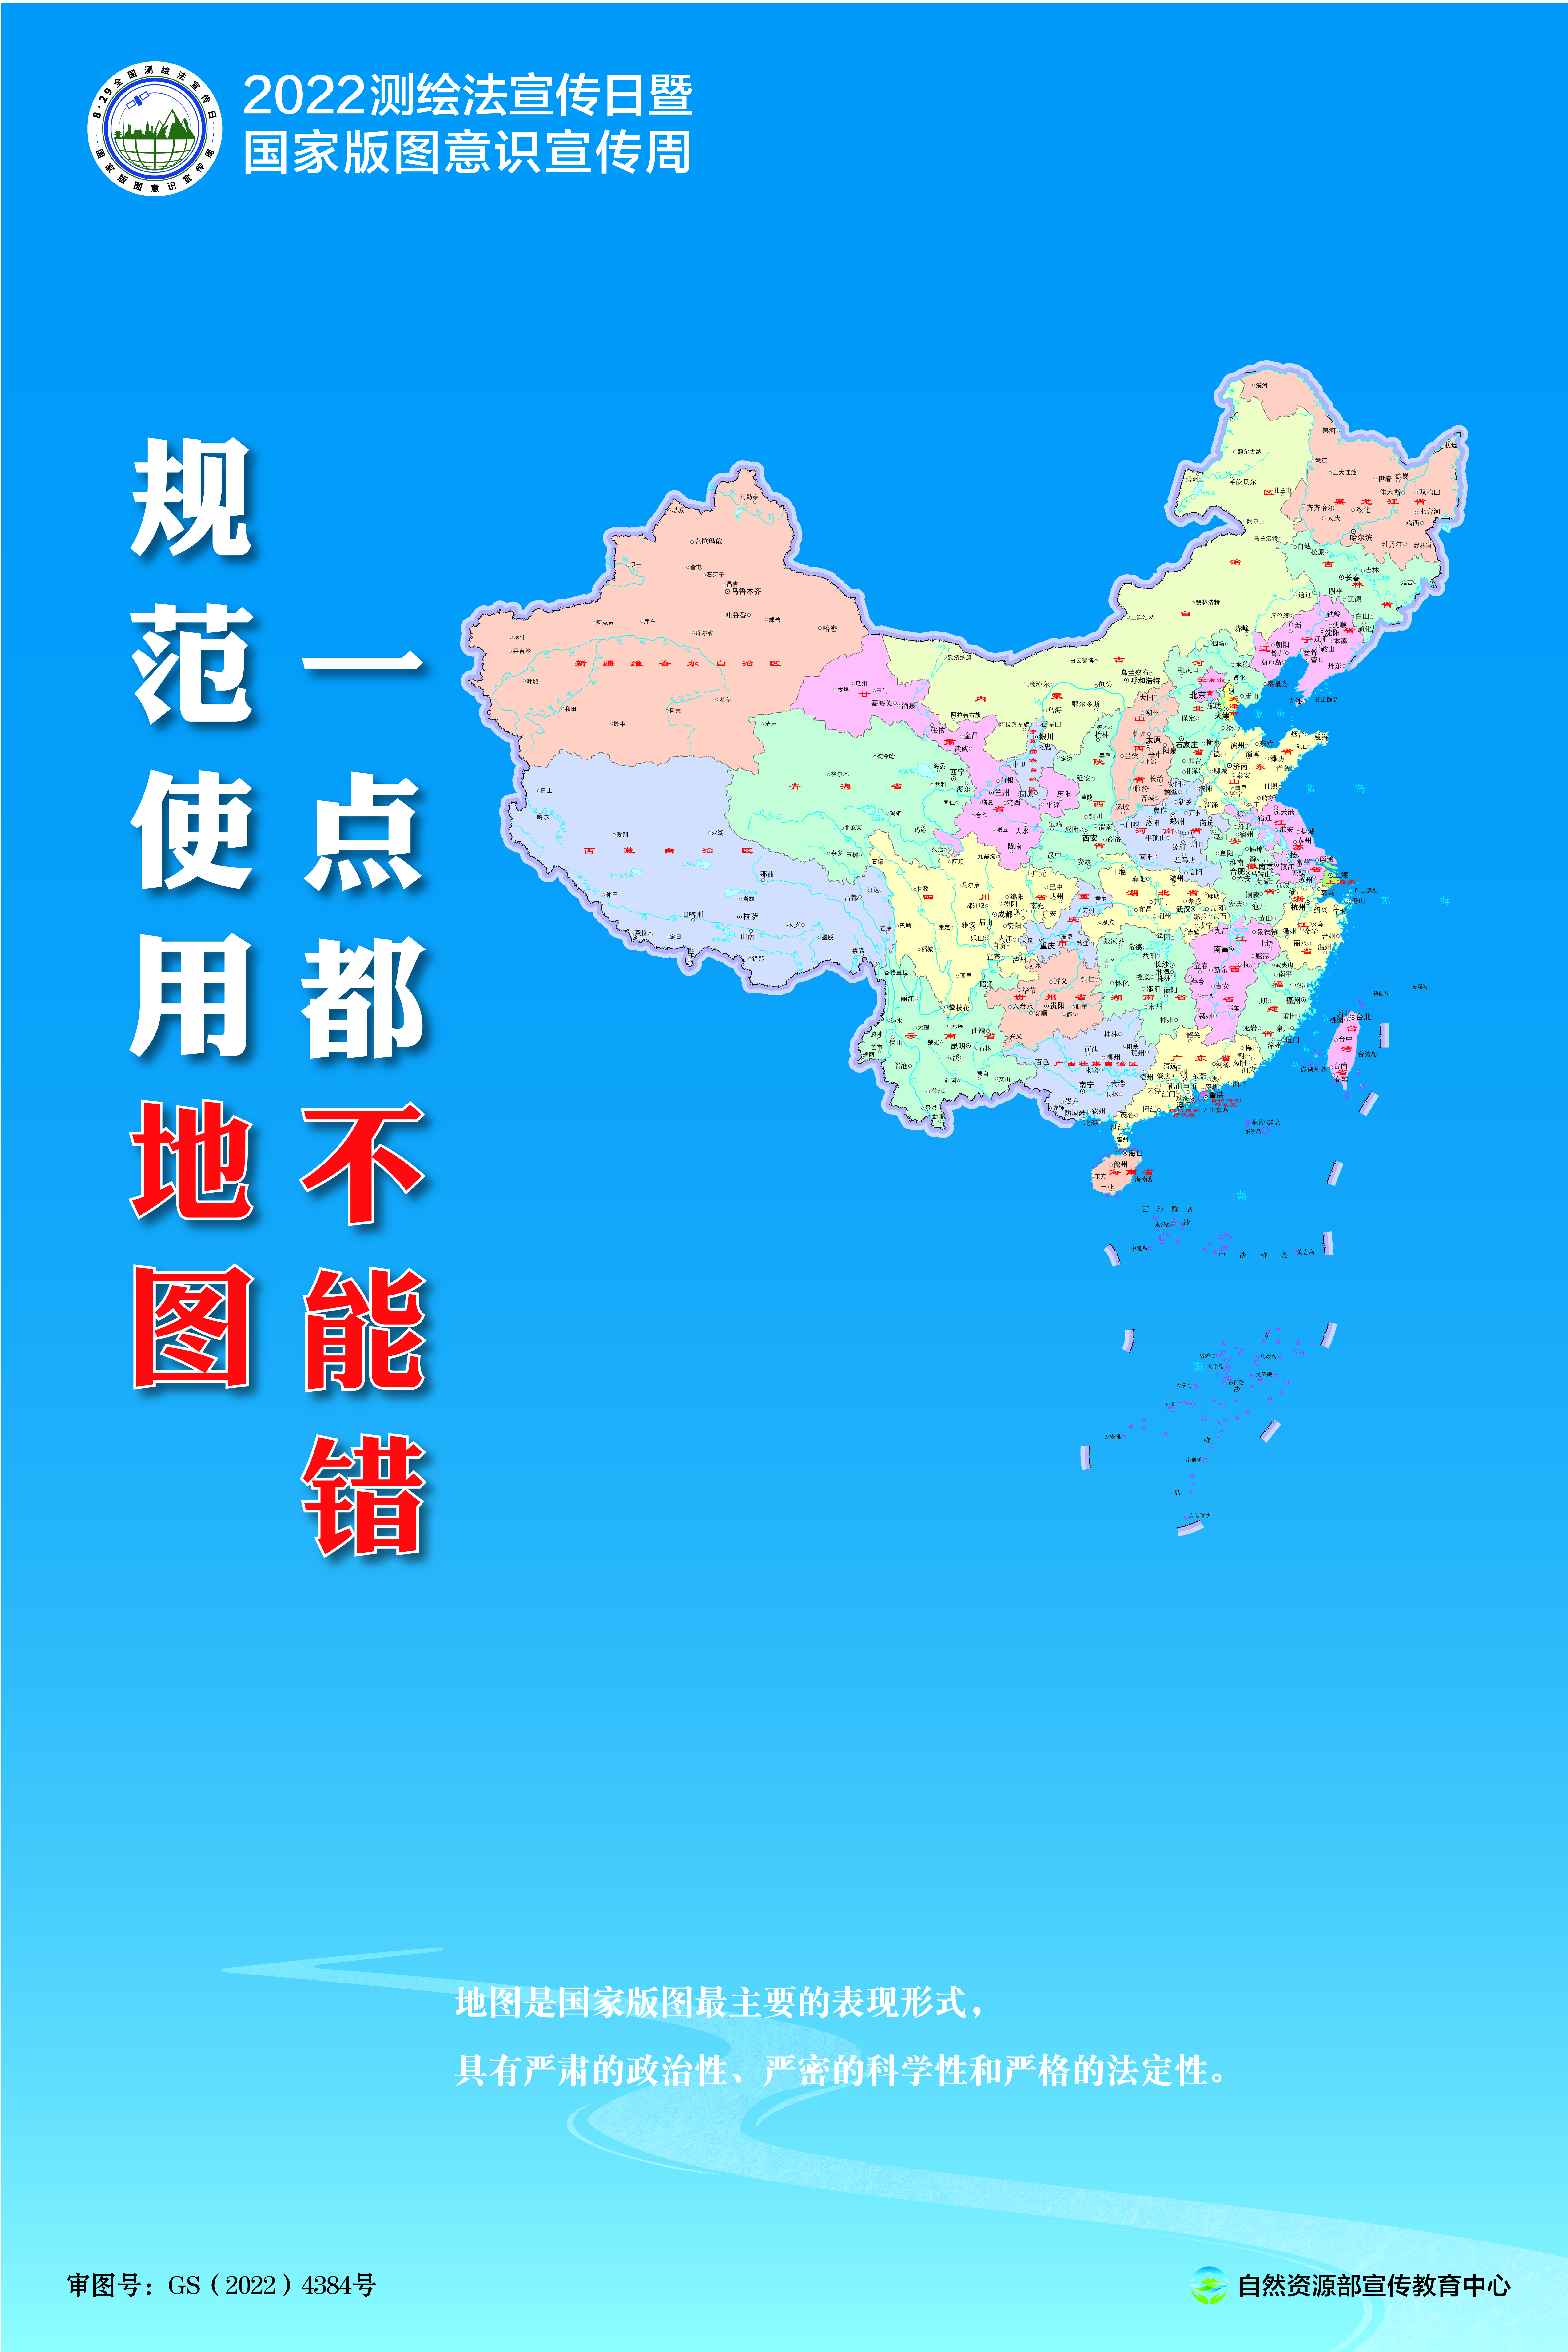 测绘法宣传日海报-2022.8.26-01.jpg